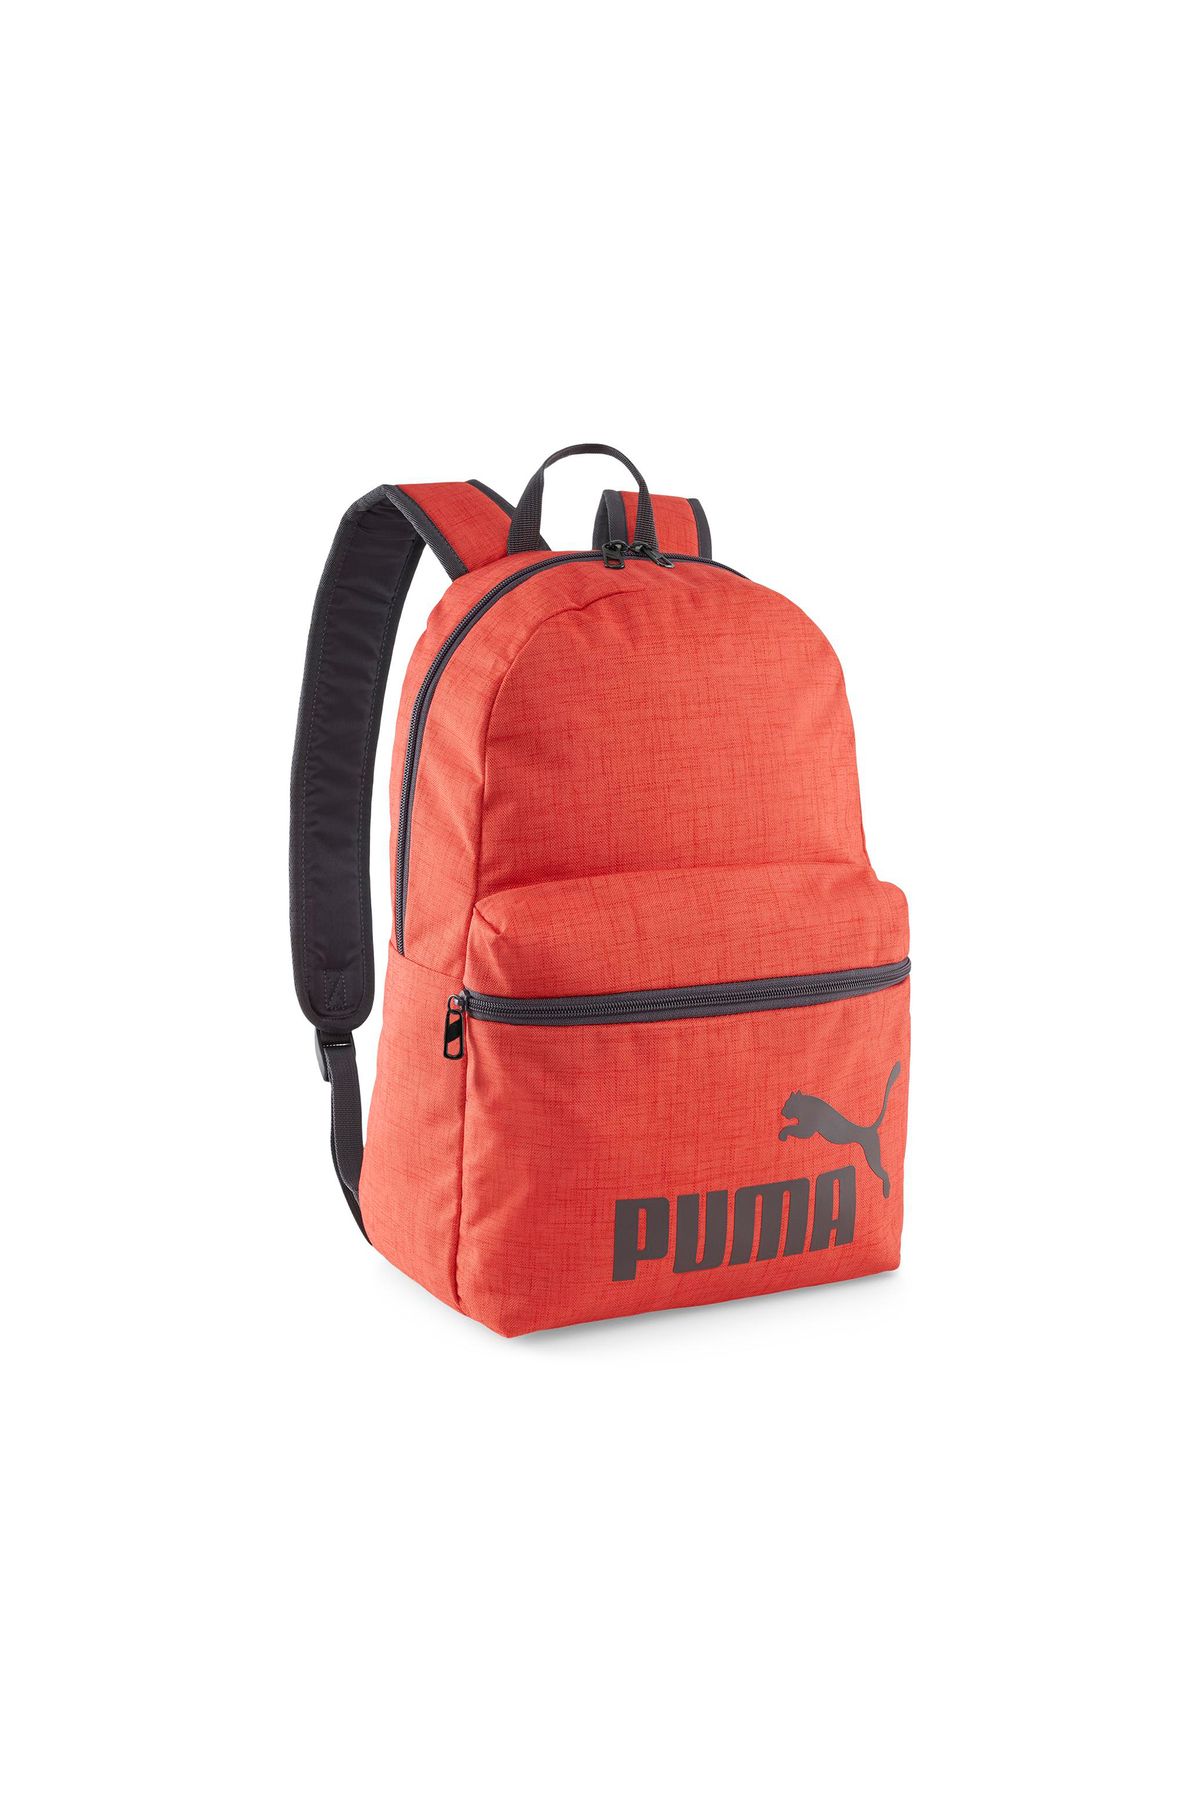 Puma Phase Backpack III Unisex Sırt Çantası 9011802